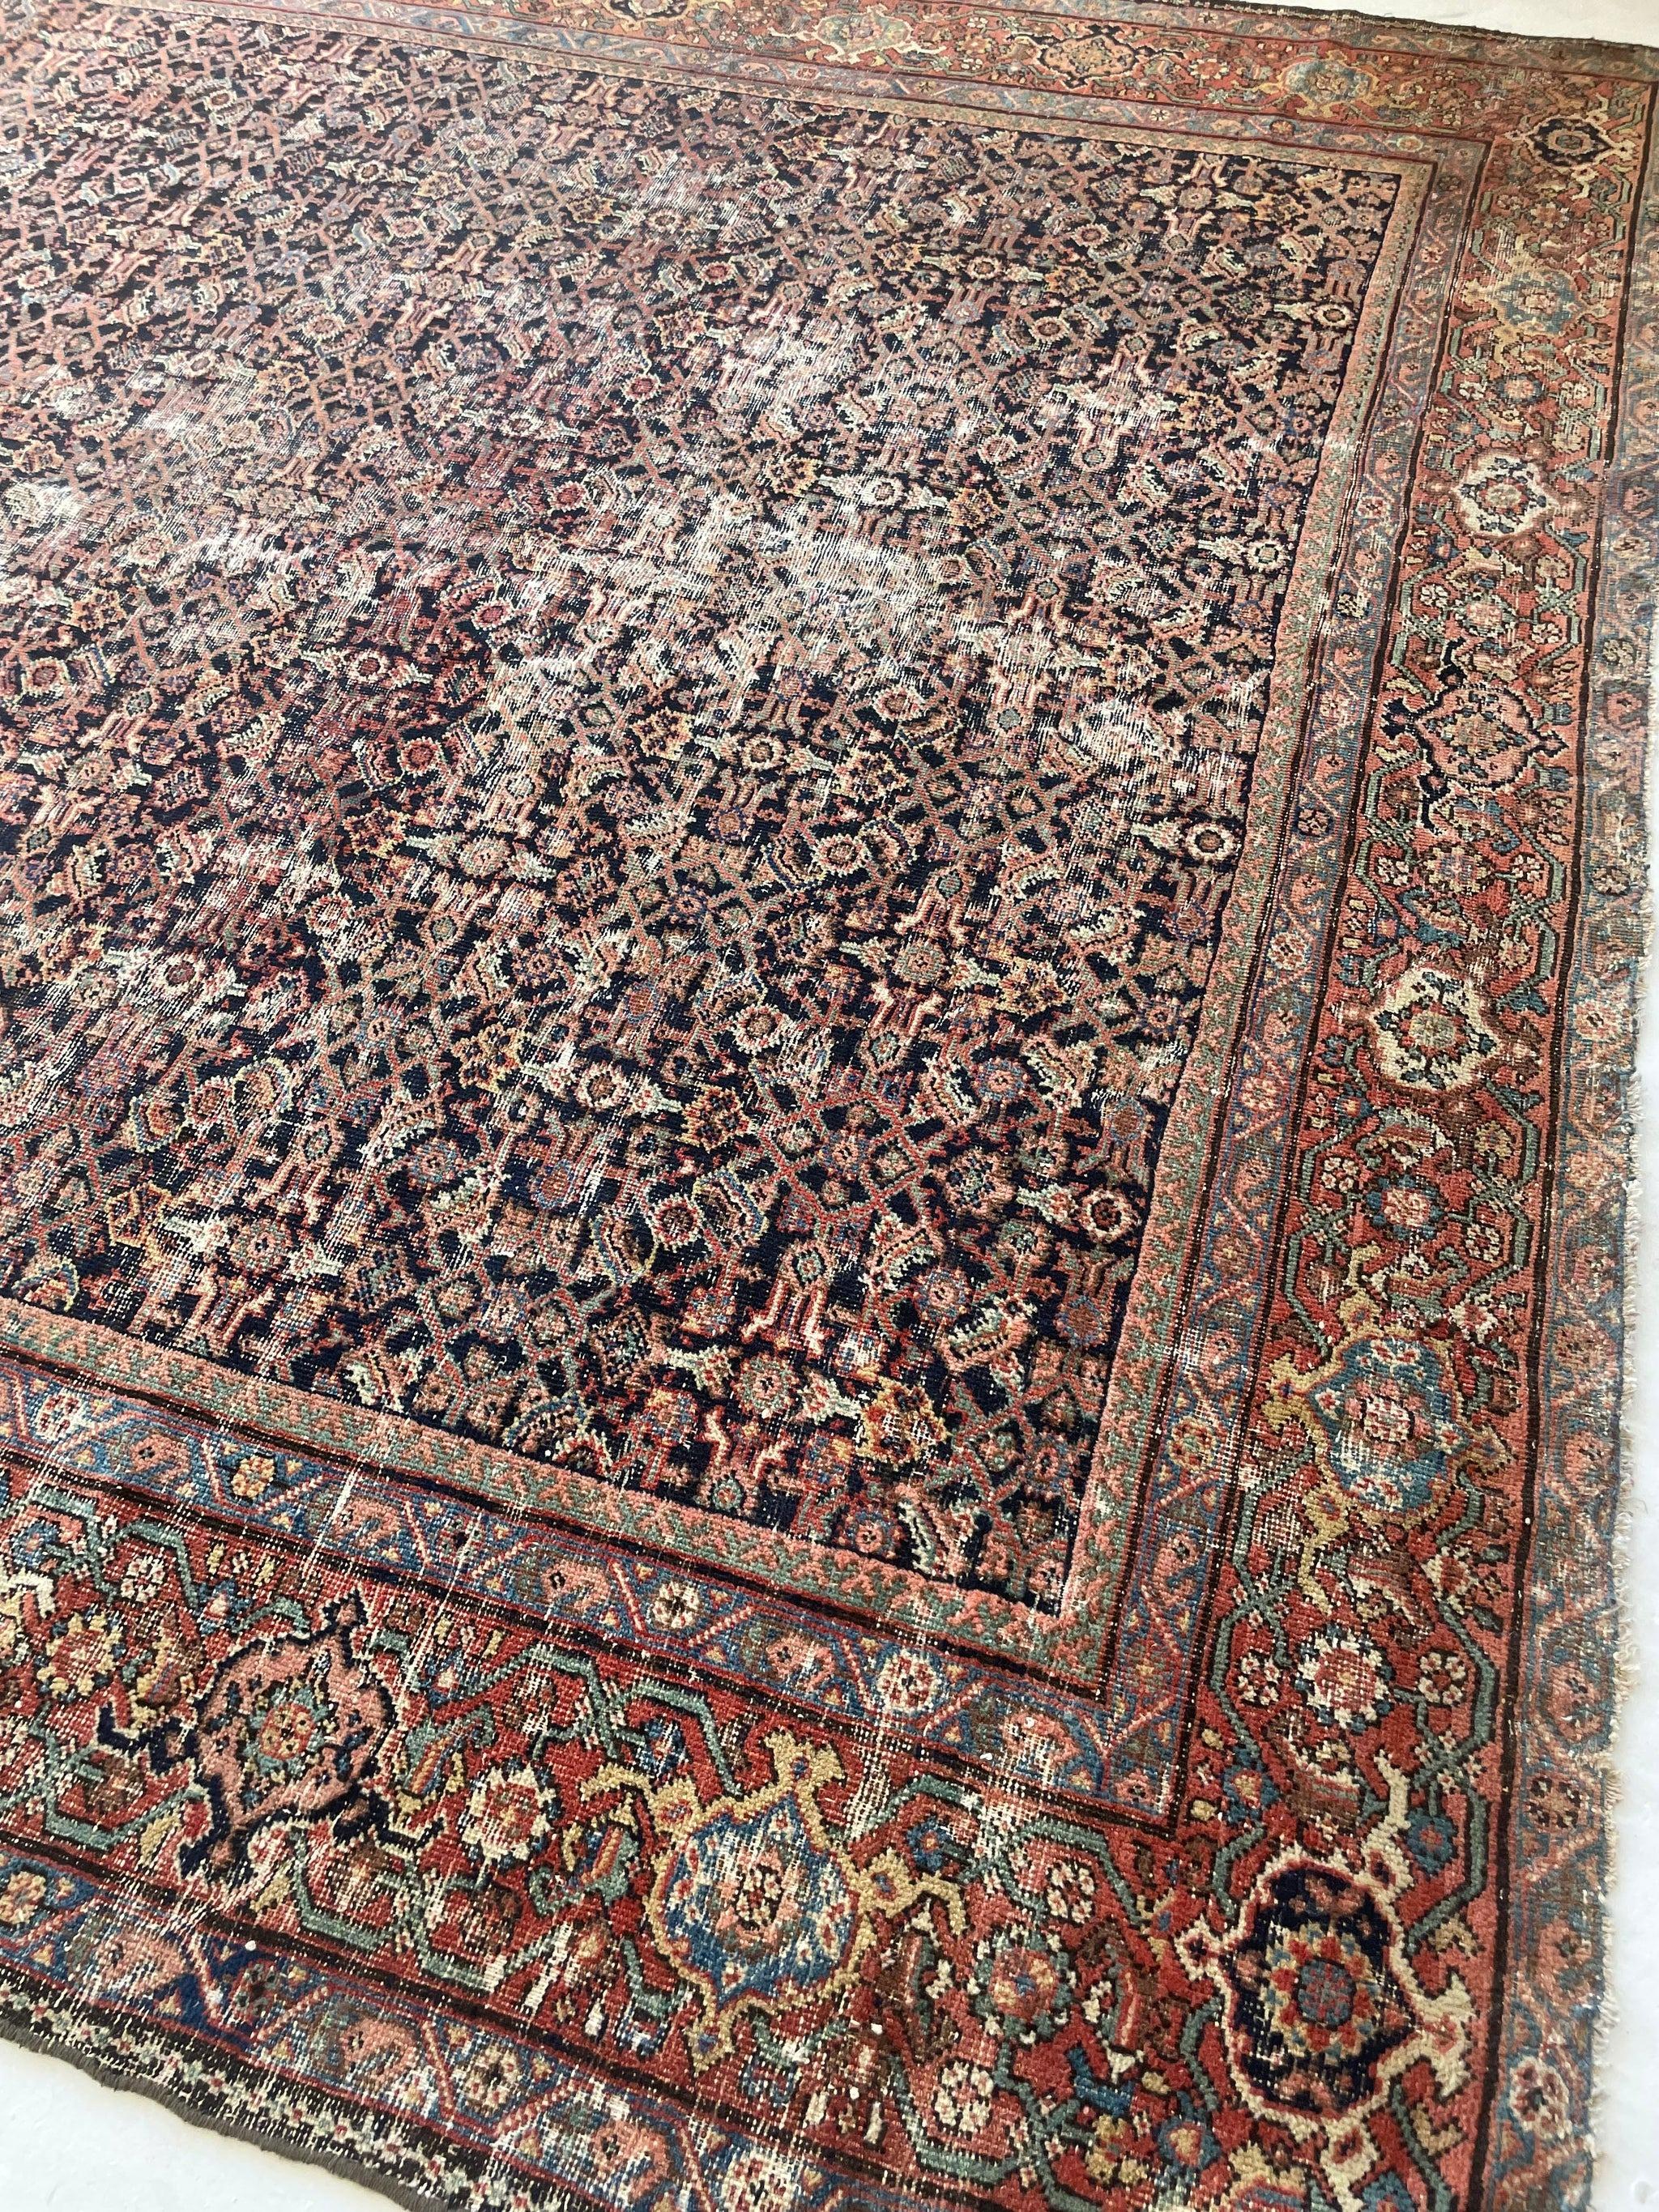 Antique Persian Carpet Rug in Deep Old-World Indigo, circa 1900-1915's For Sale 15